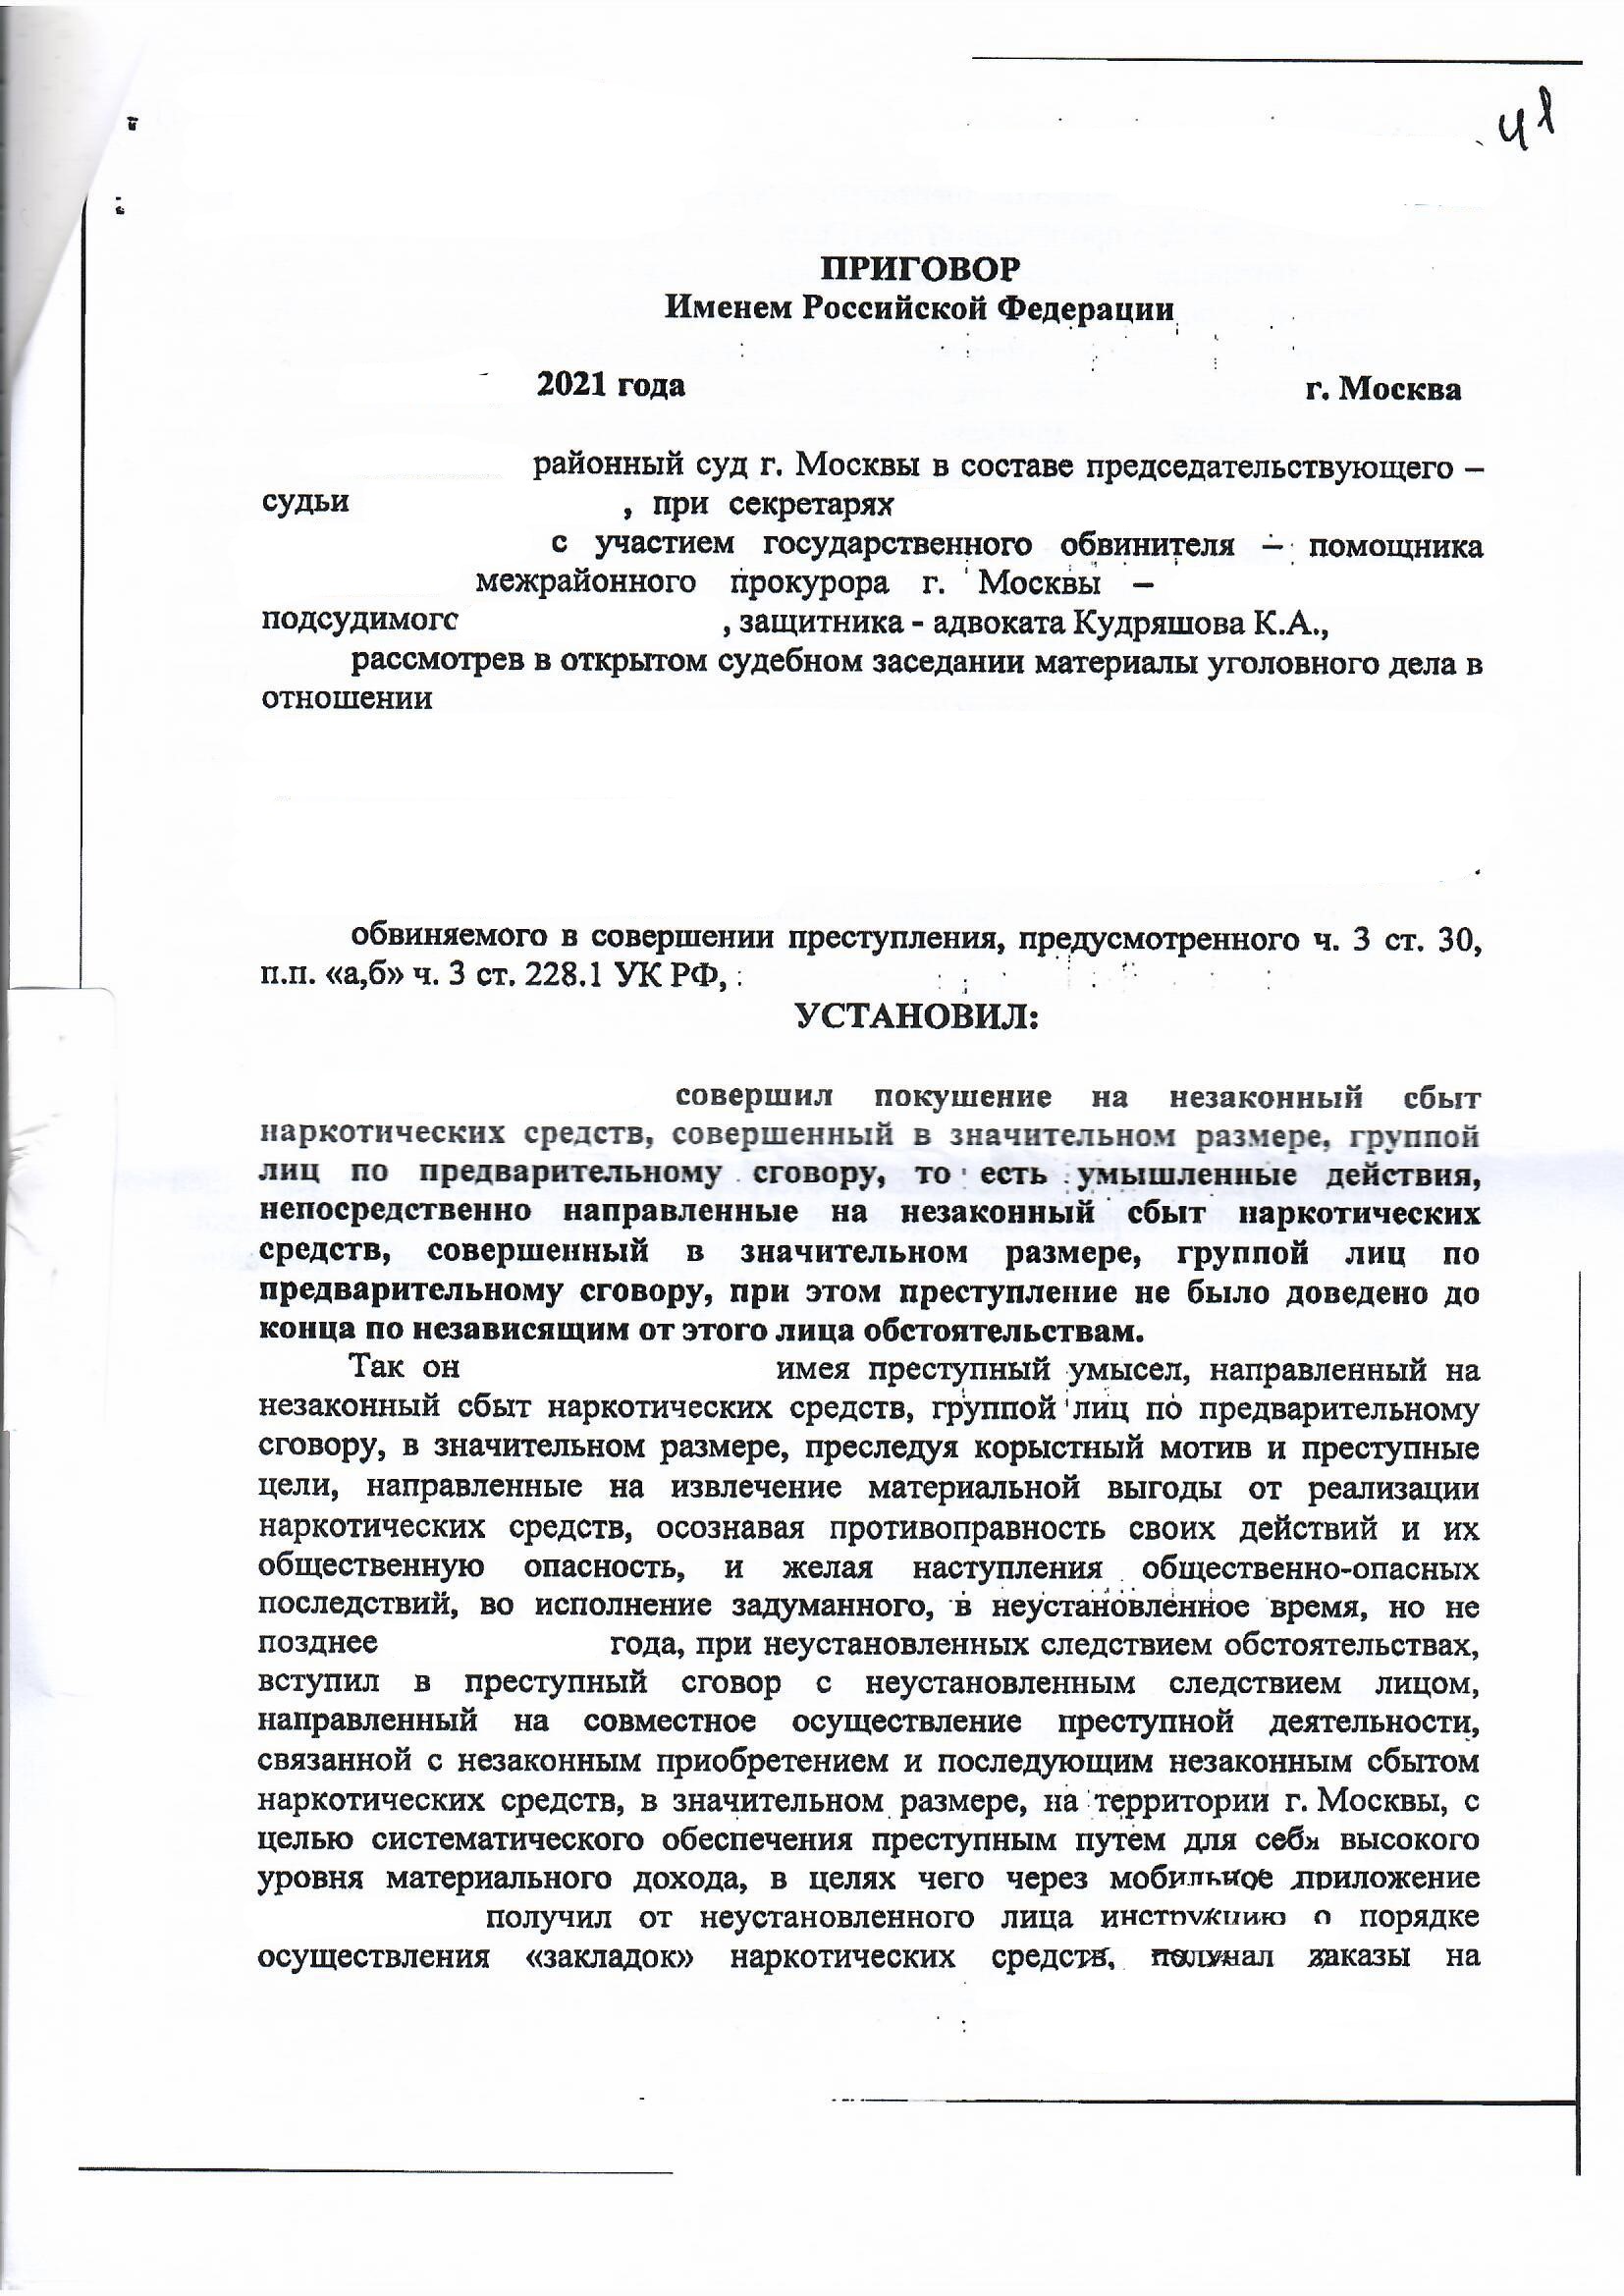 Ст 228.1 ч 3 УК РФ - Статья 228.1 часть 3 Уголовного кодекса - Приговор